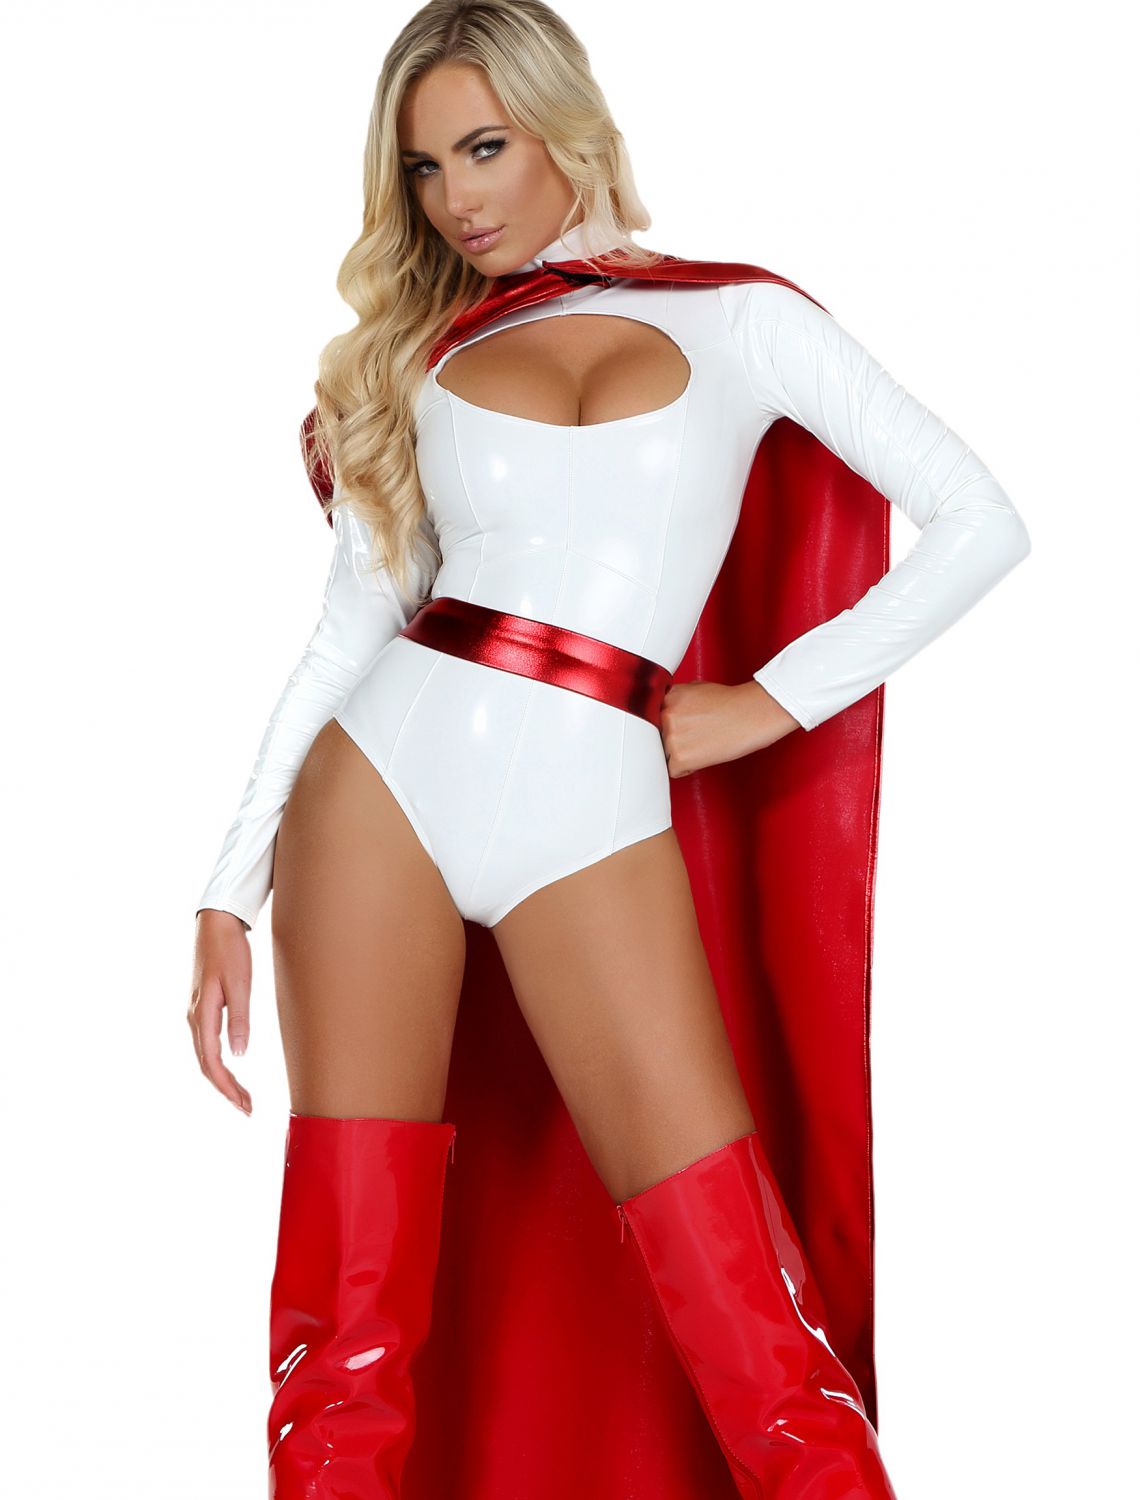 Womens Powerful Superhero Costume buy now.